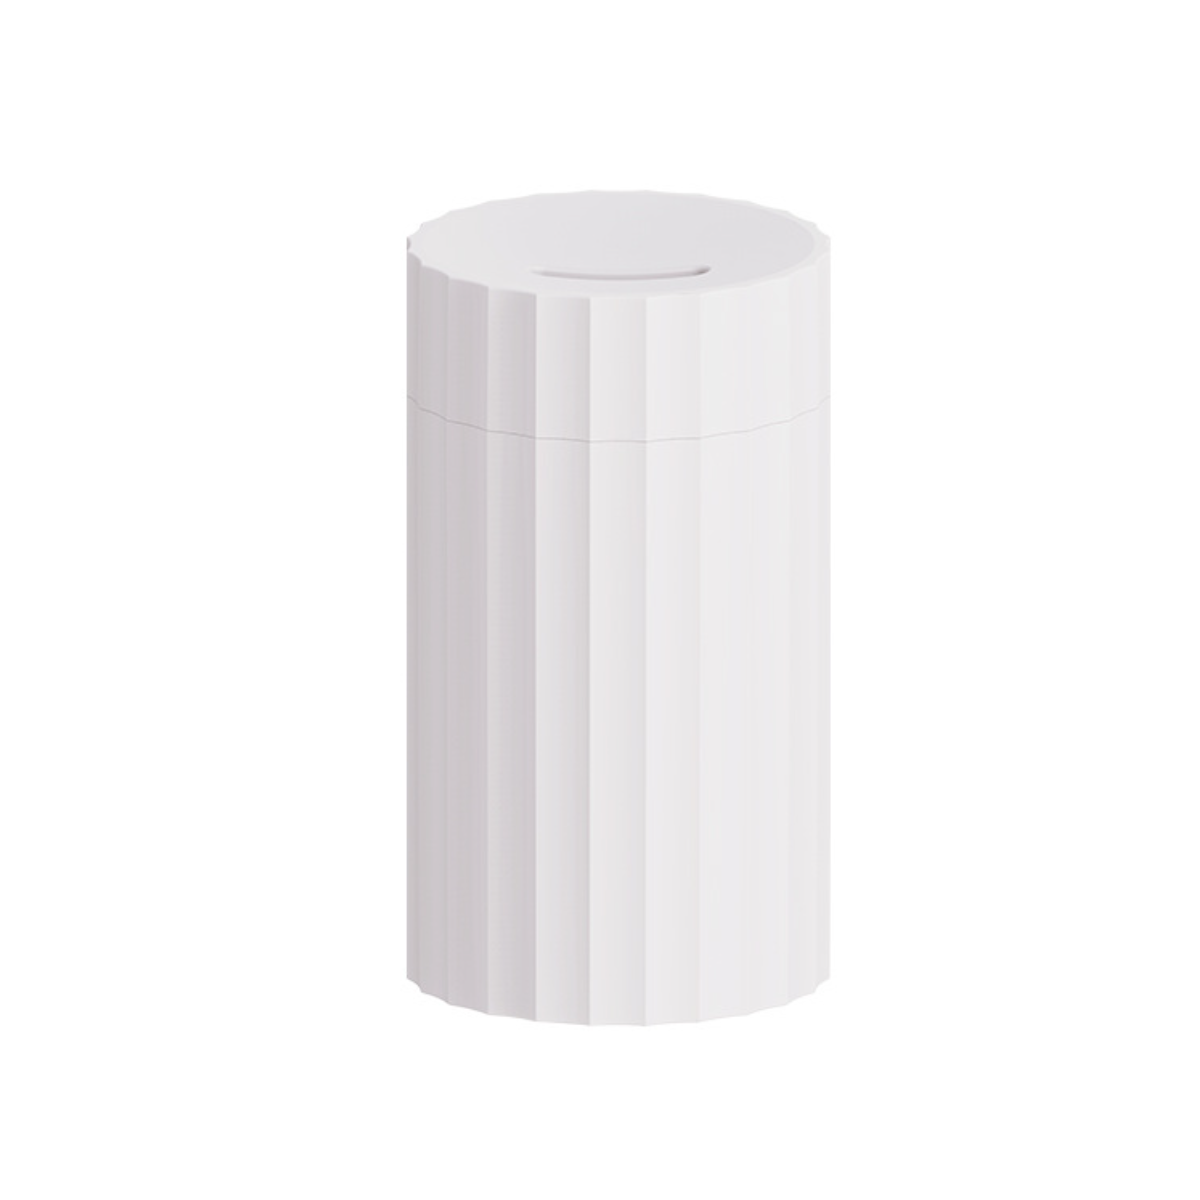 Weiß Luftbefeuchter: Raumgröße: farbiges möglich Flammen UWOT Aromatherapie m²) Watt, Luftentfeuchter 100ml geräuscharm, Weiß 20 (4,5 Umgebungslicht,